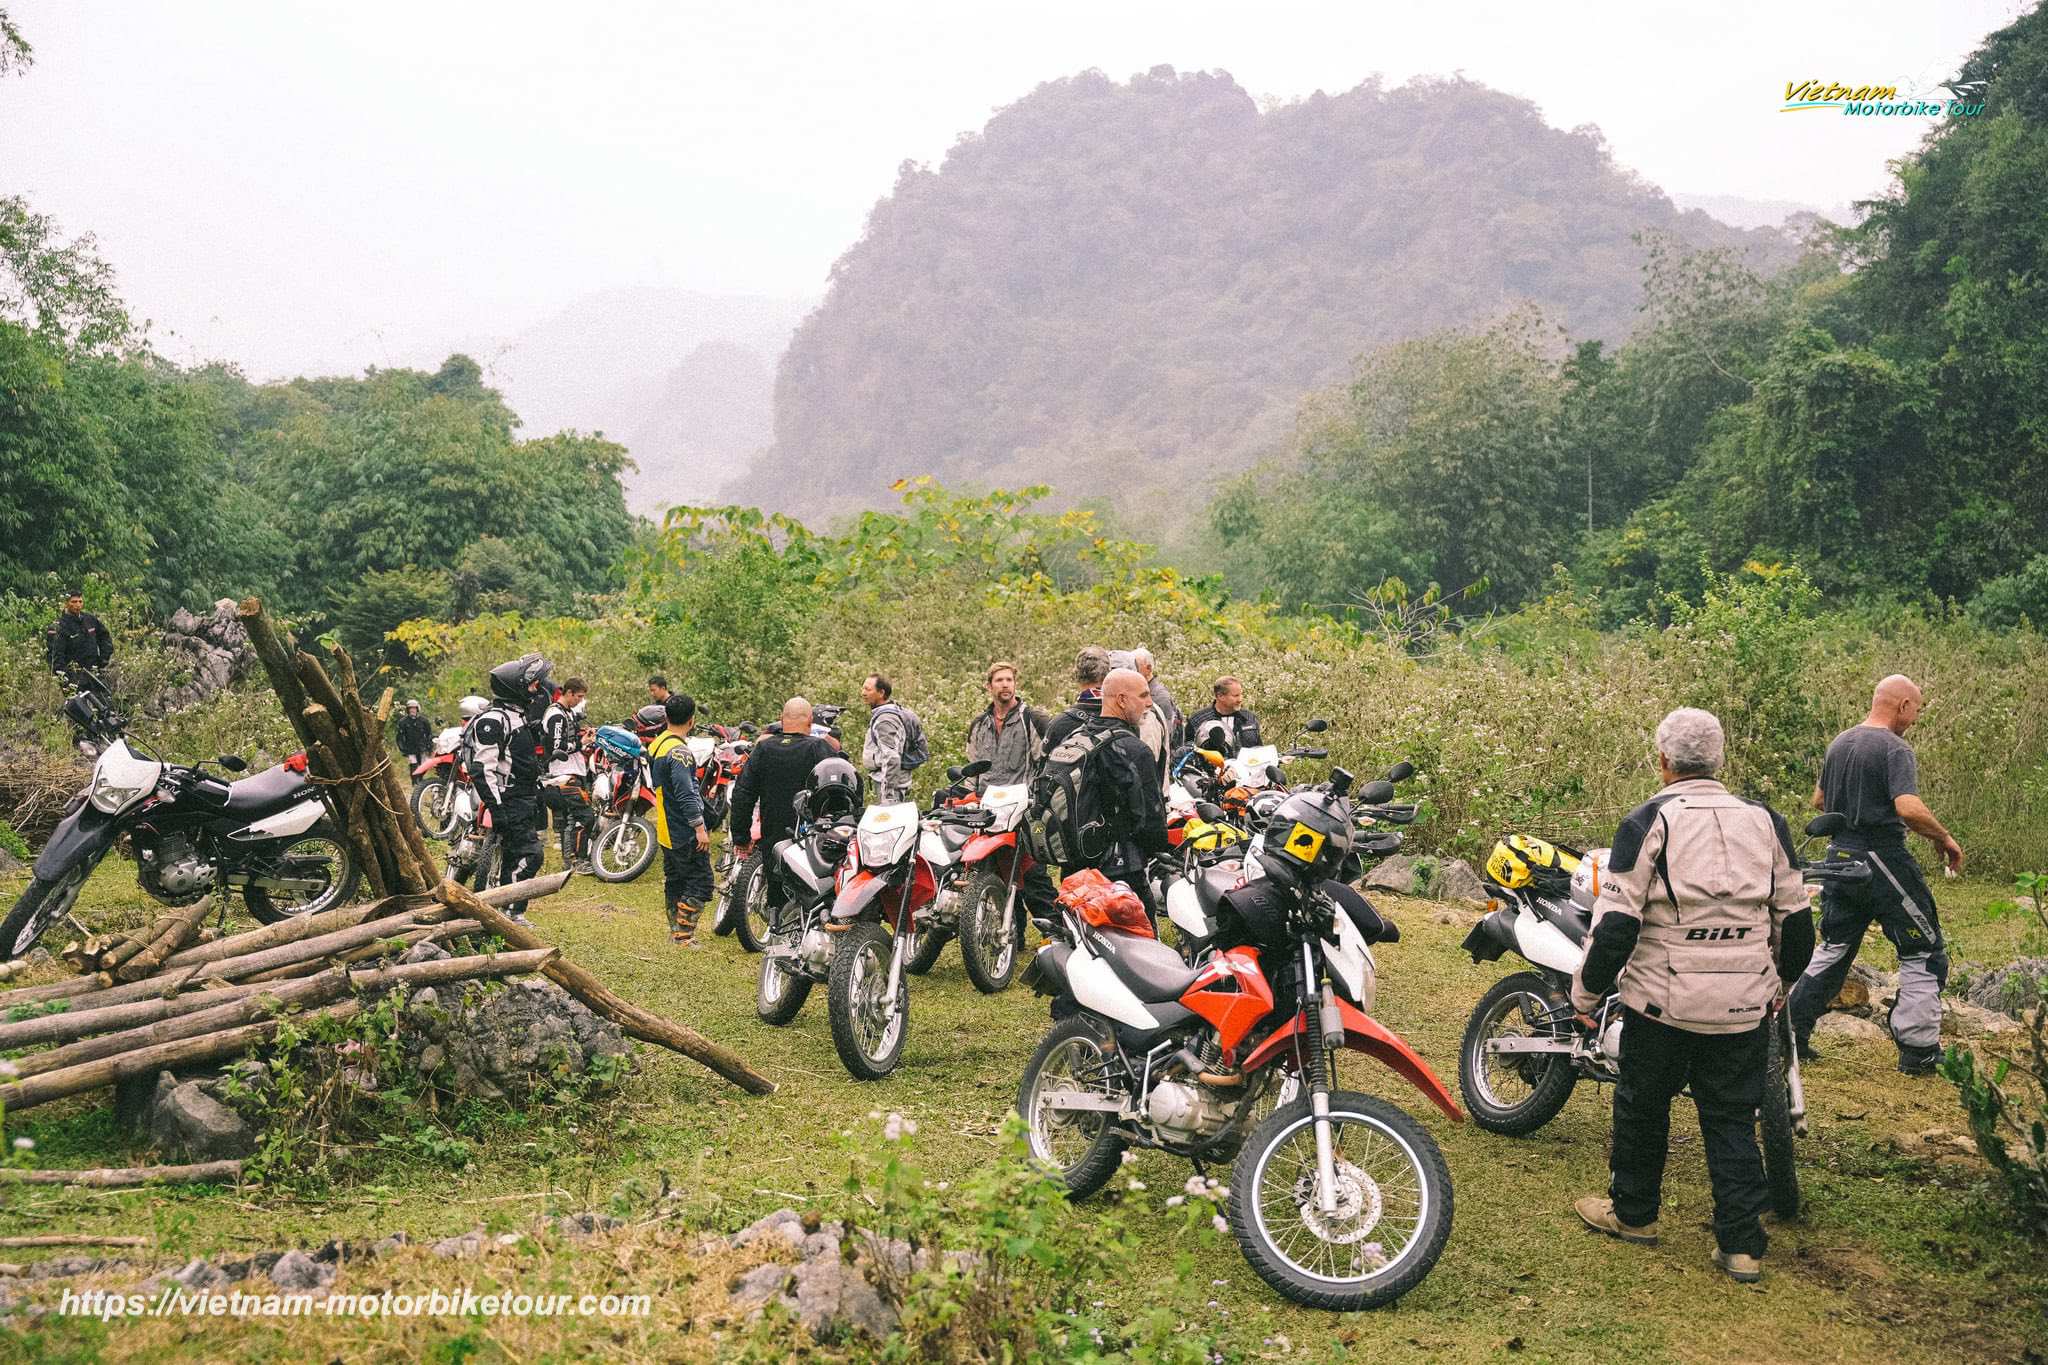 HANOI MOTORCYCLE TOURS TO MAI CHAU